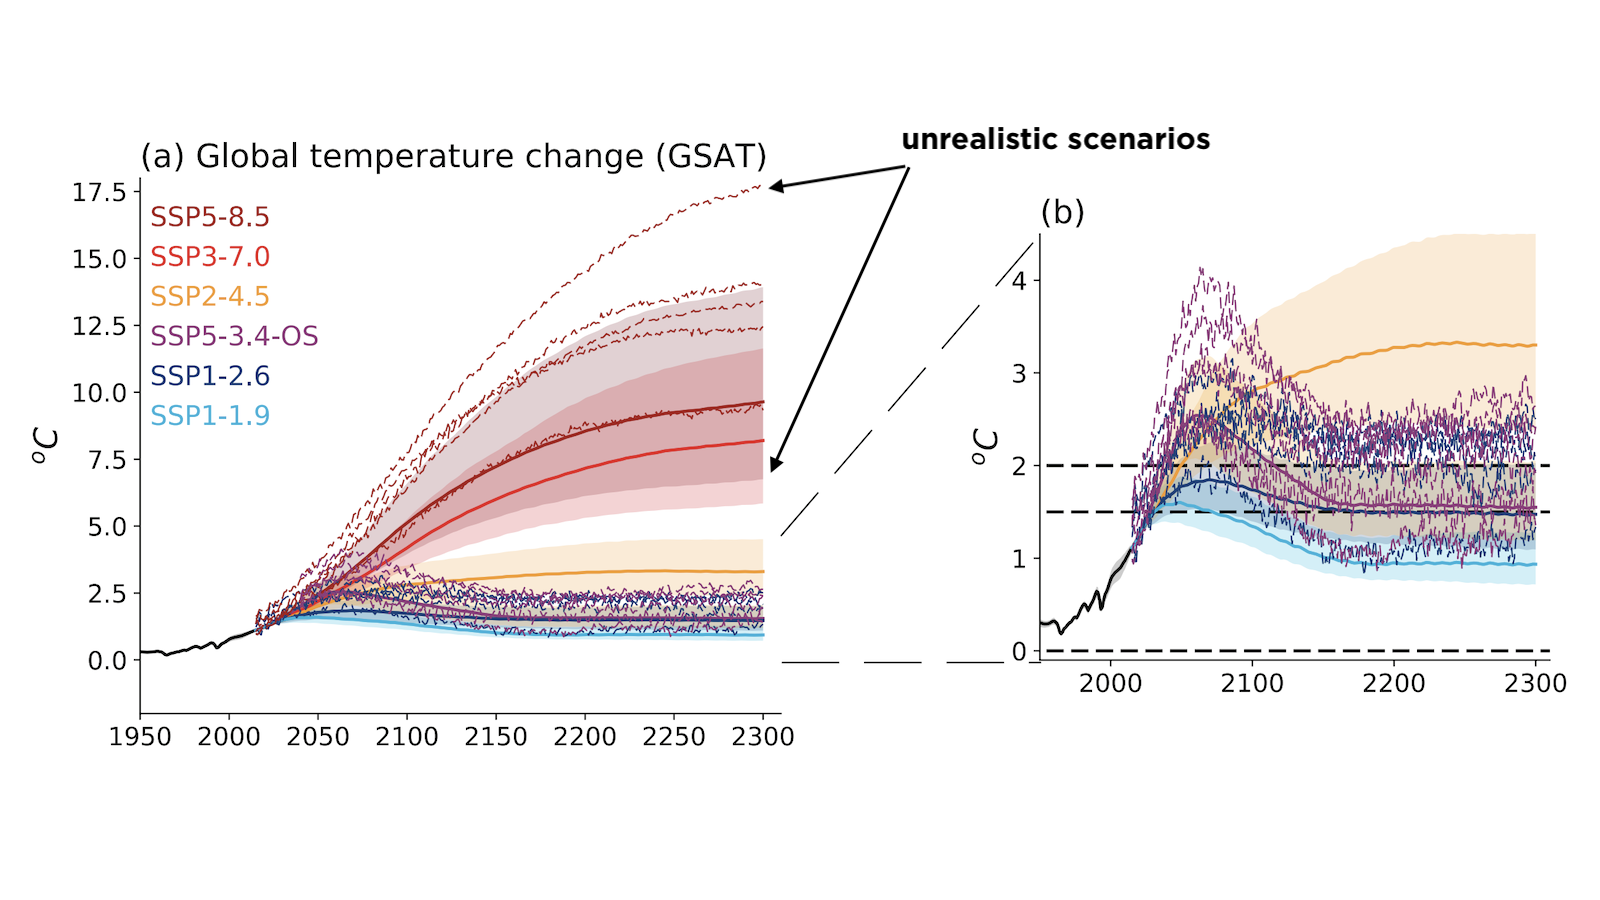 IPCC scenarios